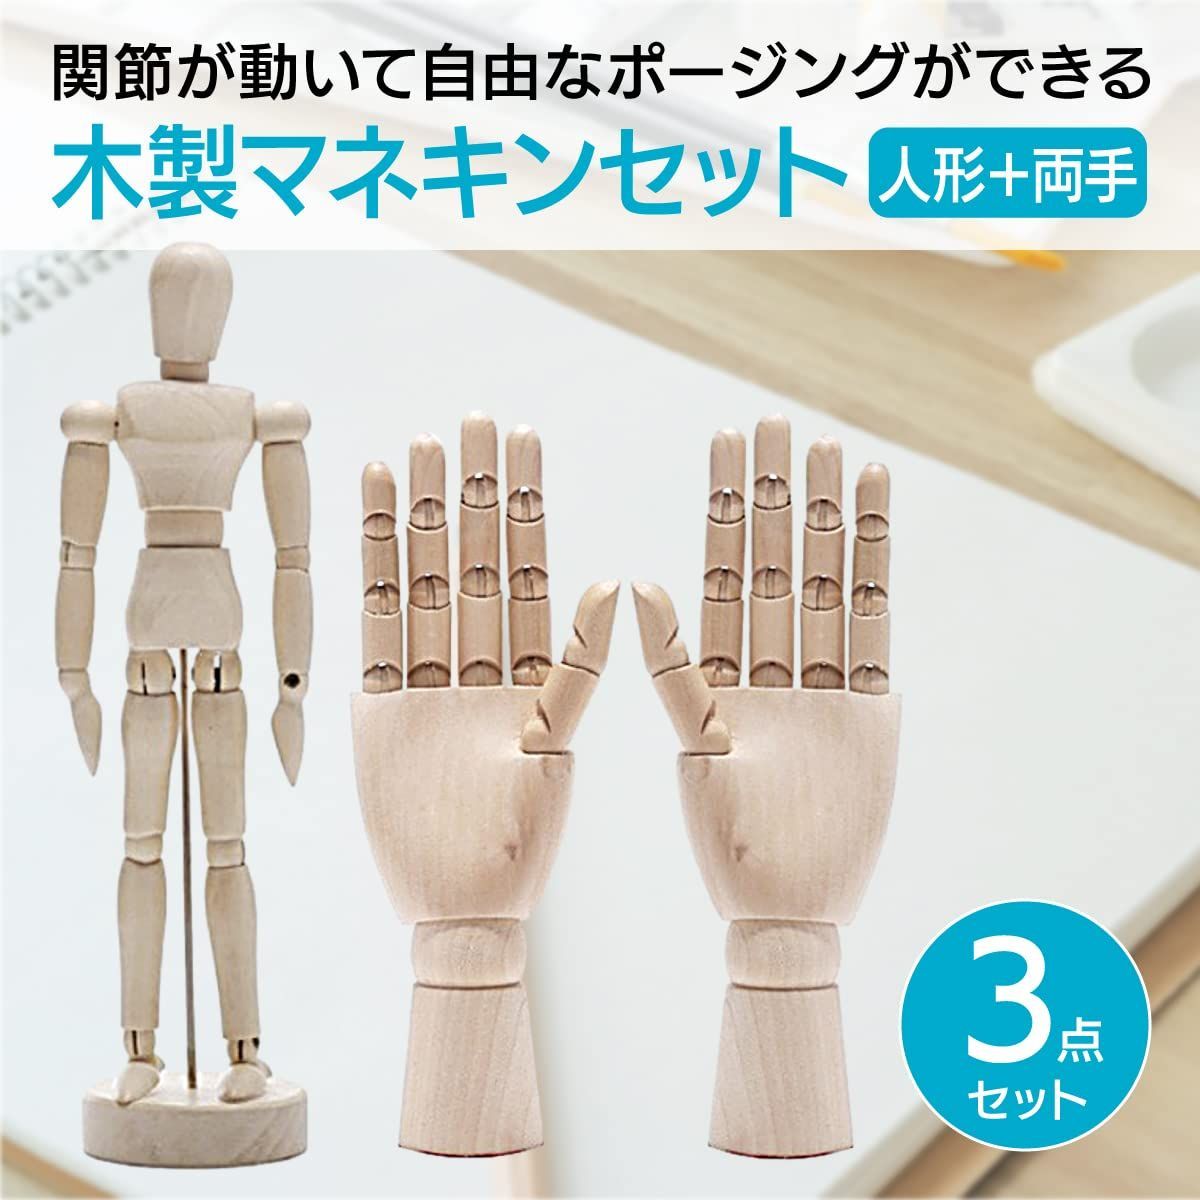 特価セール】(両手＋人形) 両手 関節可動 人形 ウッド ハンドモデル